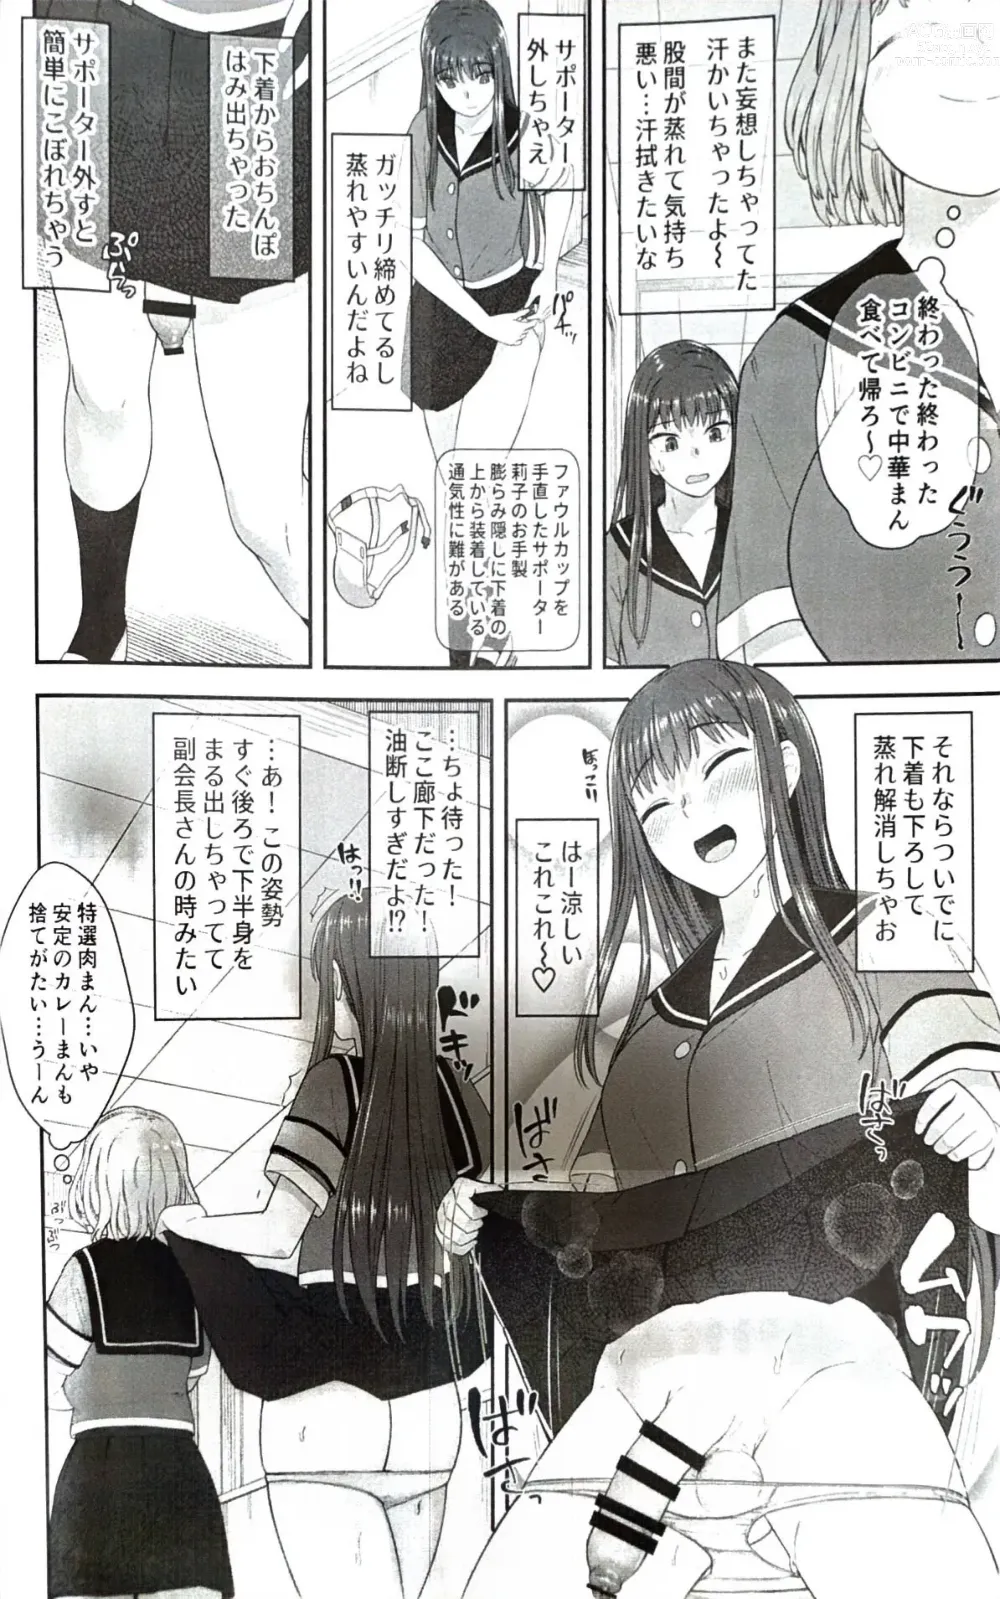 Page 7 of doujinshi Danseiki Roshutsu Jidori-han no Shoutai wa Kanojo dake ga Shitteiru.